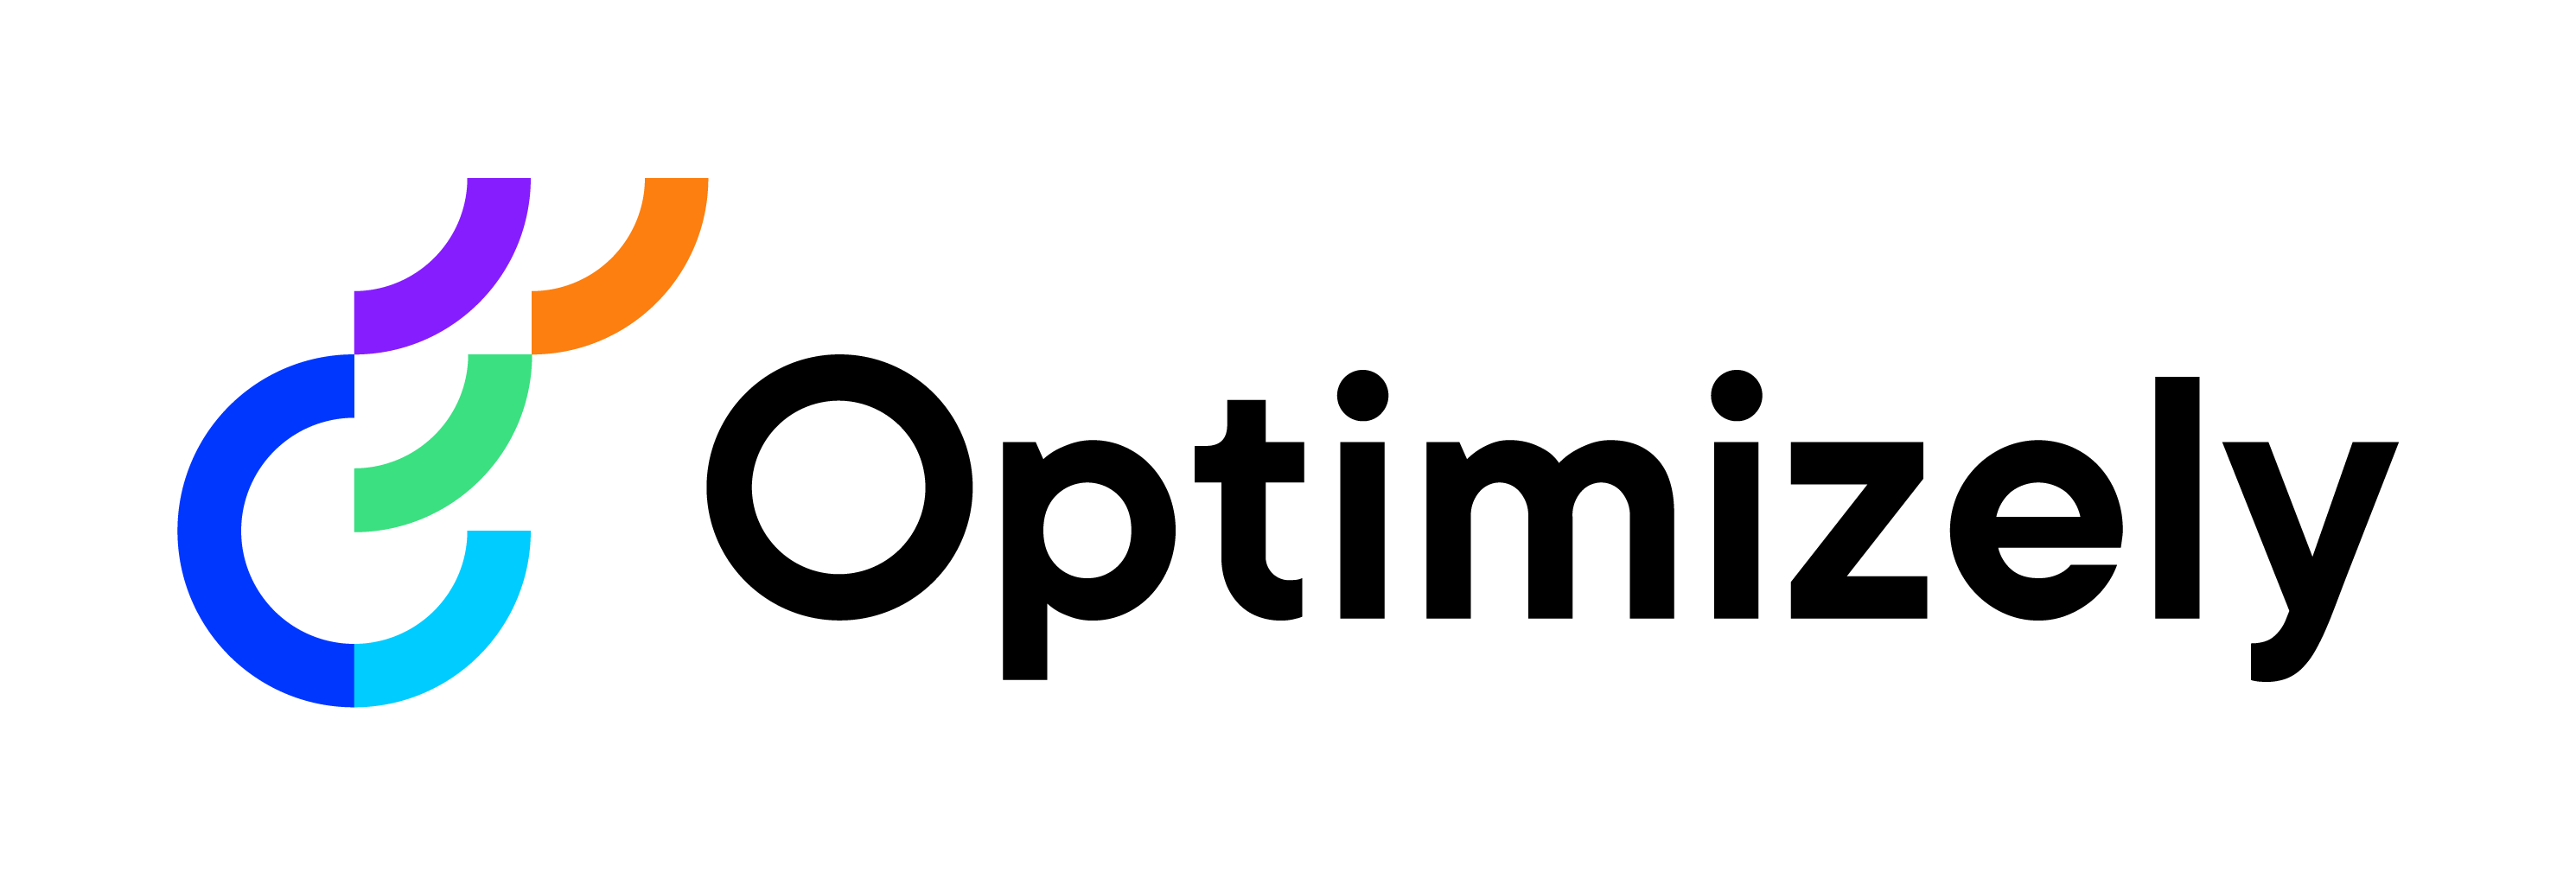 Image of Optimizely logo